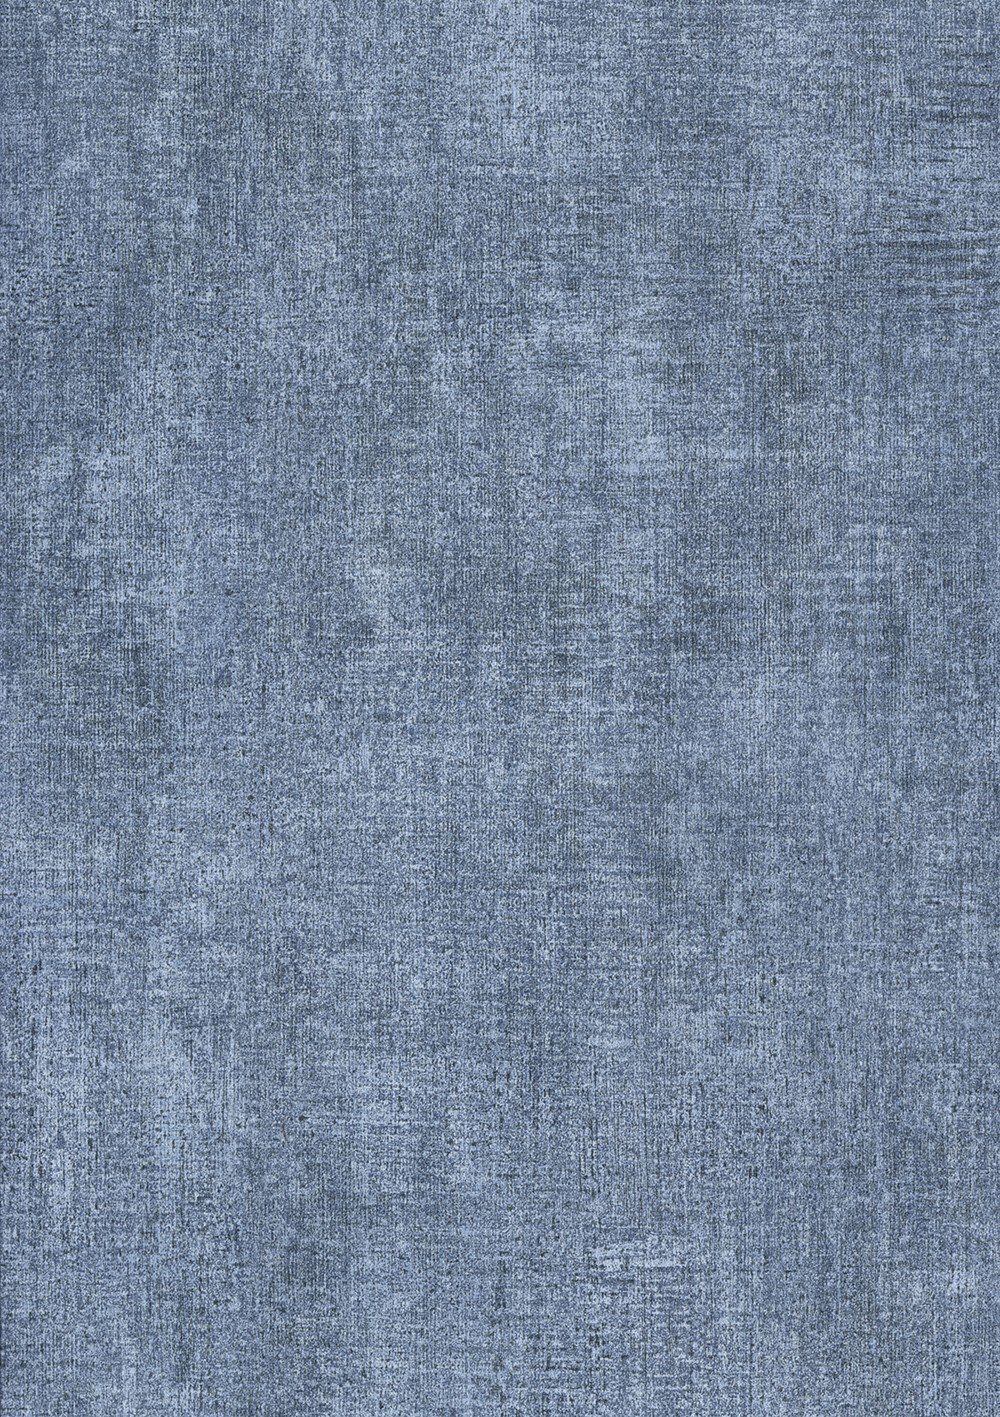 Текстура джинсов. Chambord l43791. Фактура джинсовой ткани. Текстура джинсовой ткани. Серая джинсовая ткань.